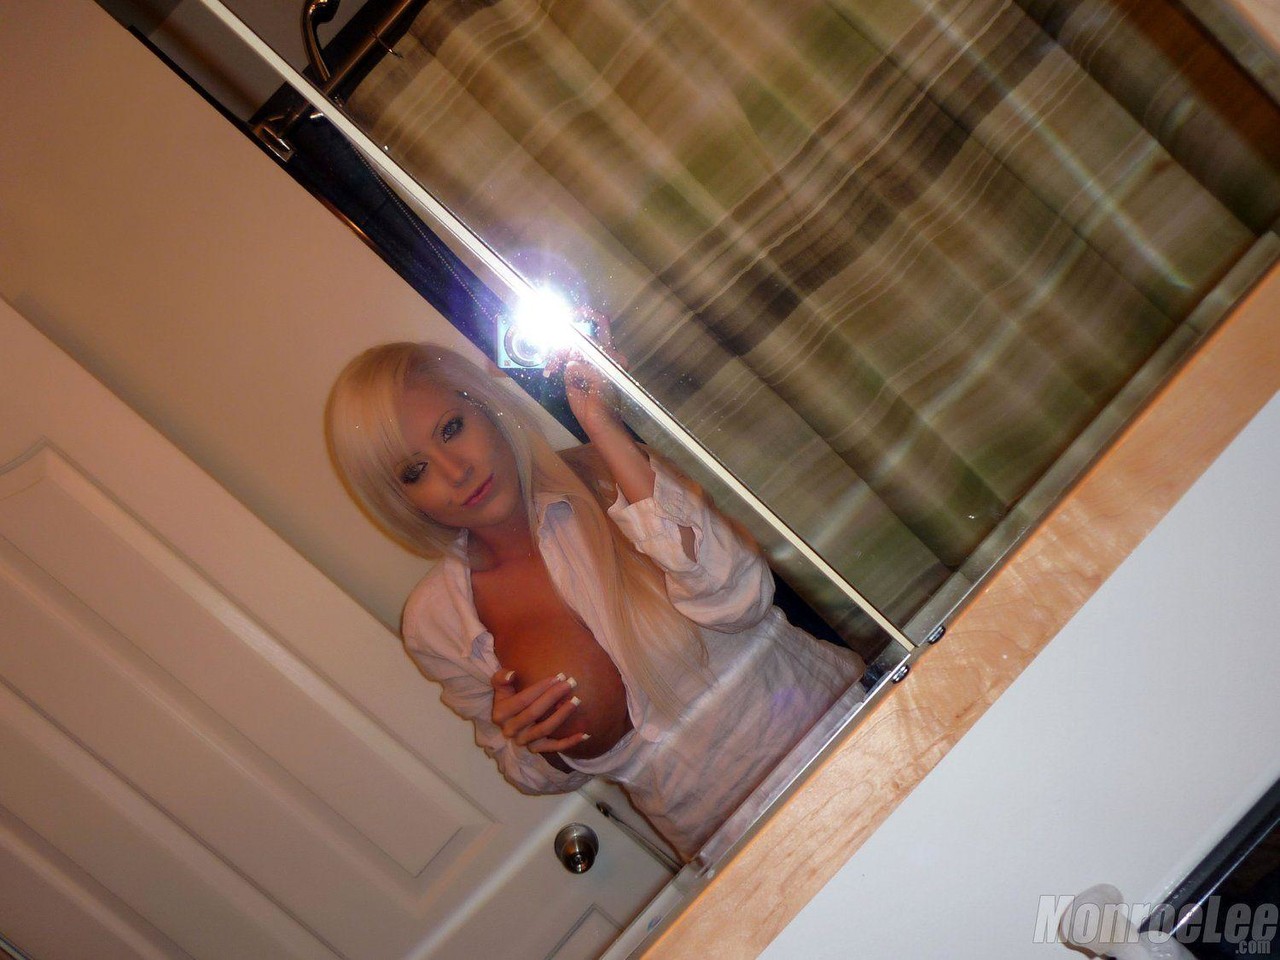 Monroe Lee Bathroom Selfies foto porno #425648148